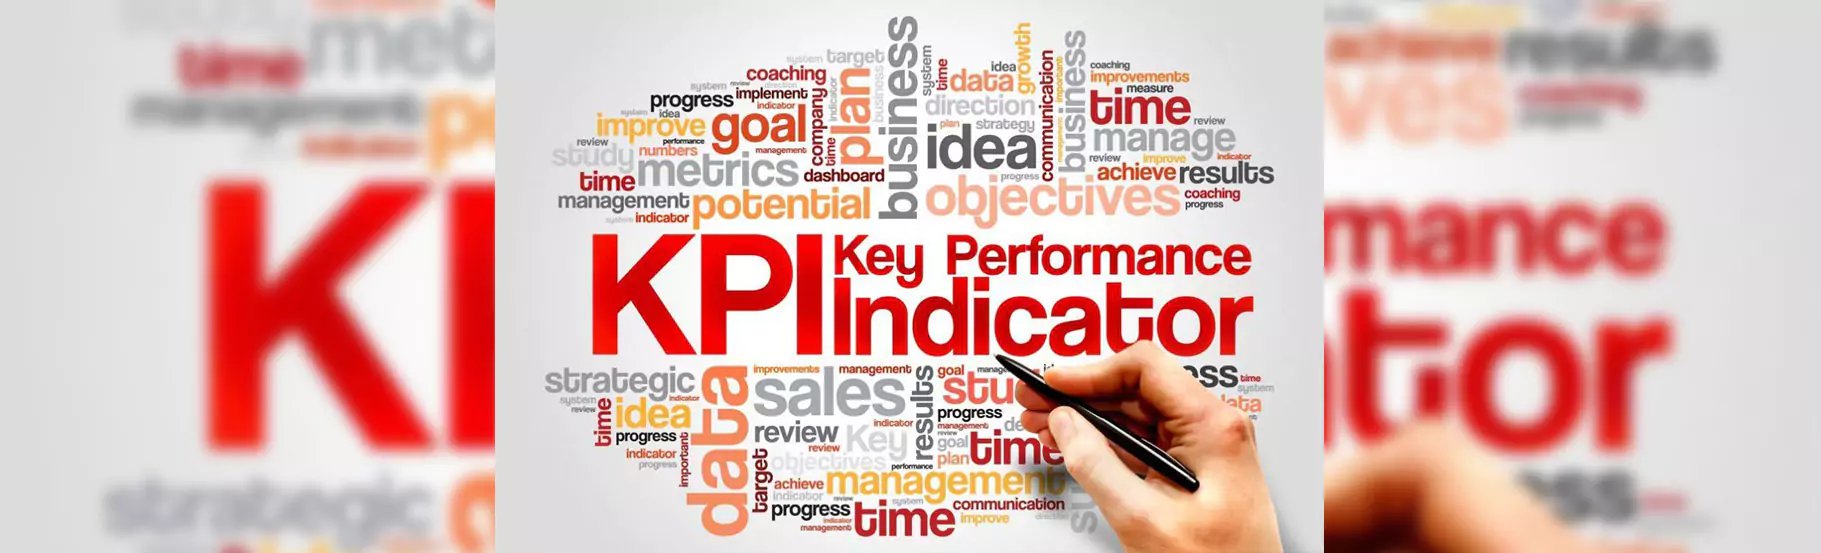 kpi-gco-key-performance-indicator-pc